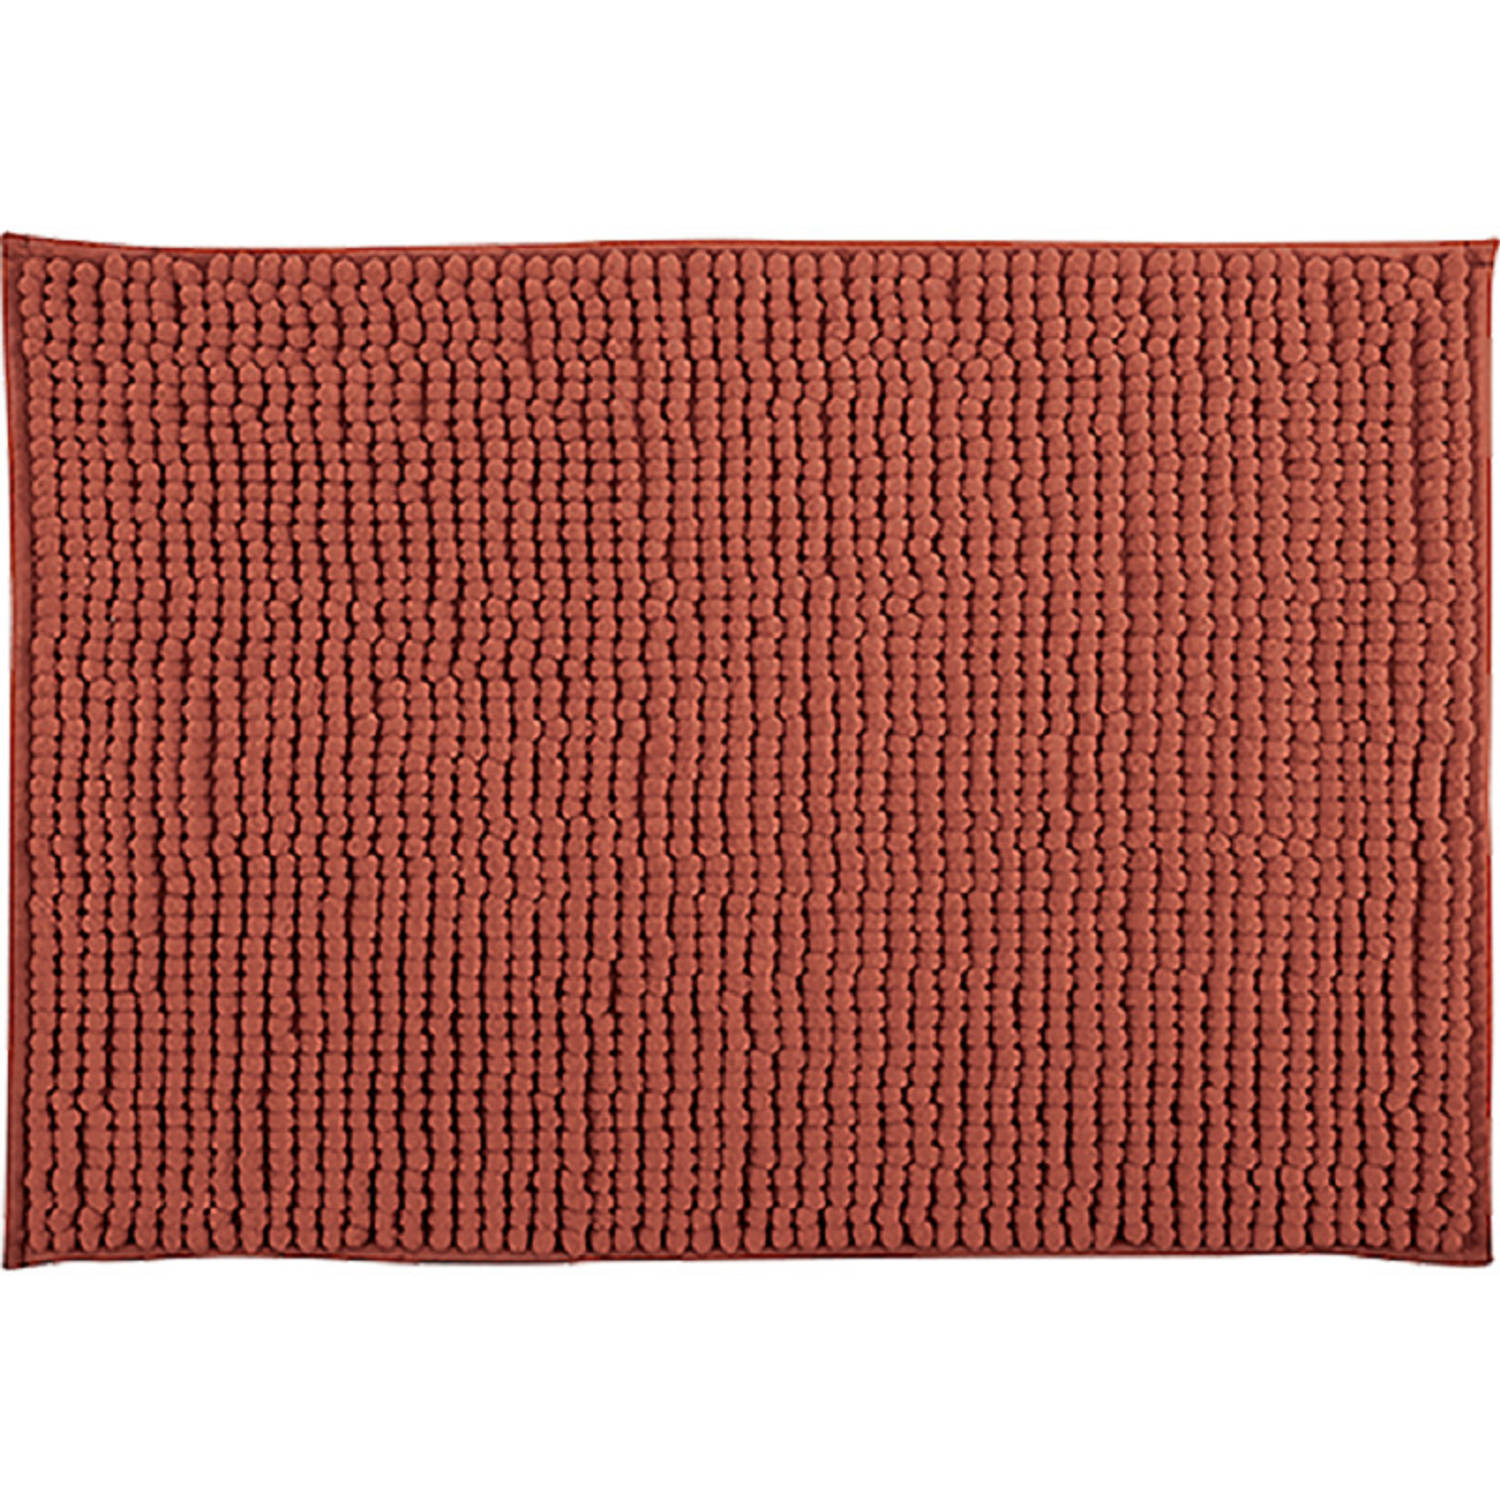 MSV Badkamerkleed/badmat tapijtje voor op de vloer - terracotta - 50 x 80 cm - Microvezel - anti slip